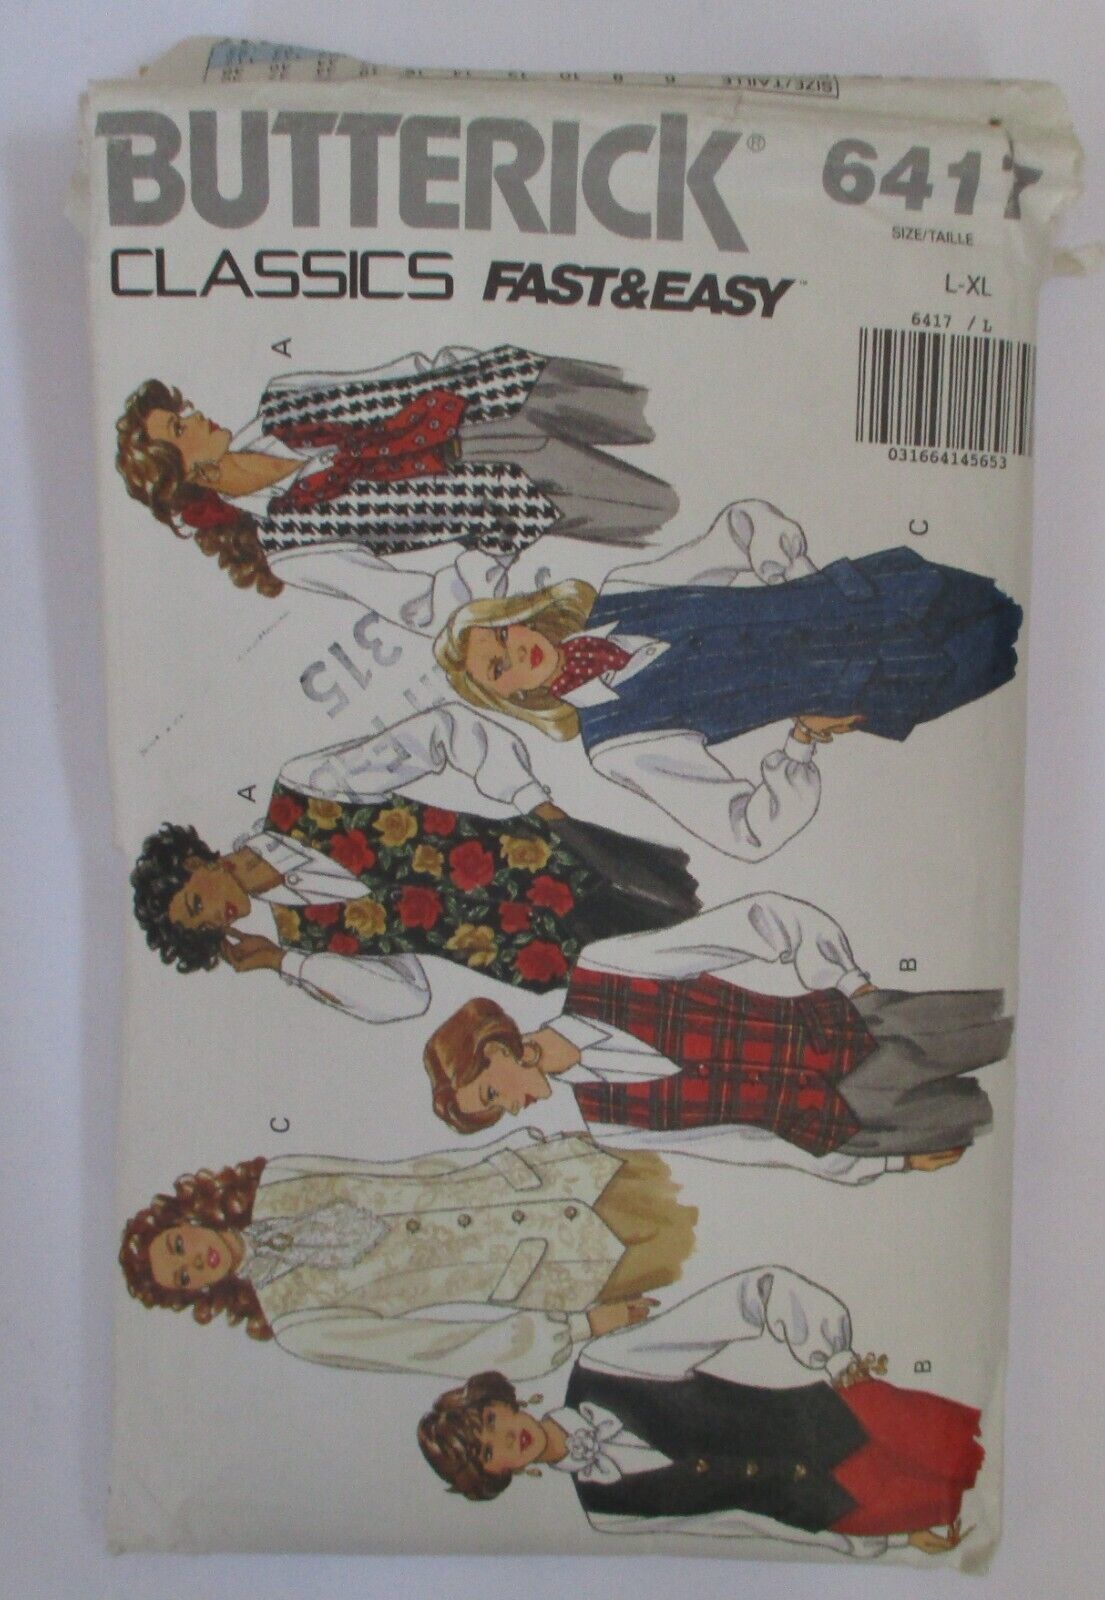 Butterick 6417 Fast & Easy Classics Vests L-XL CUT - $6.72